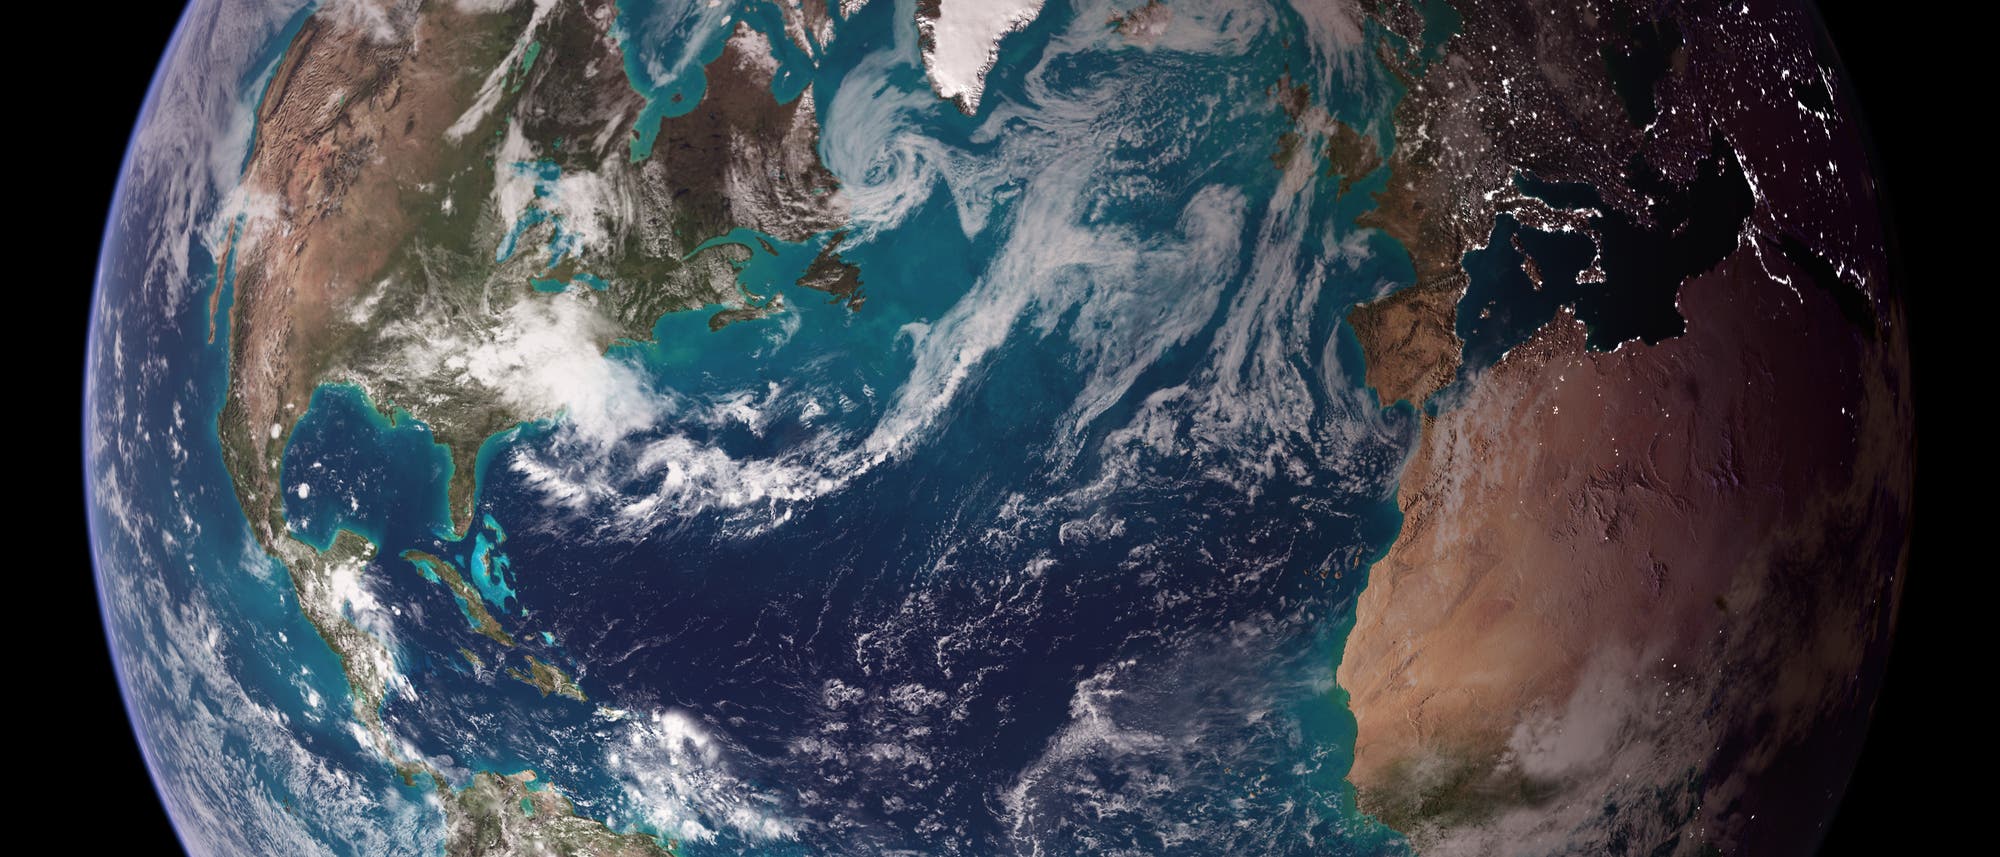 Satellitenbild der Erde, das den Atlantik in tiefem Blau zwischen den Kontinenten Nord- und Südamerika sowie Afrika und Europa zeigt